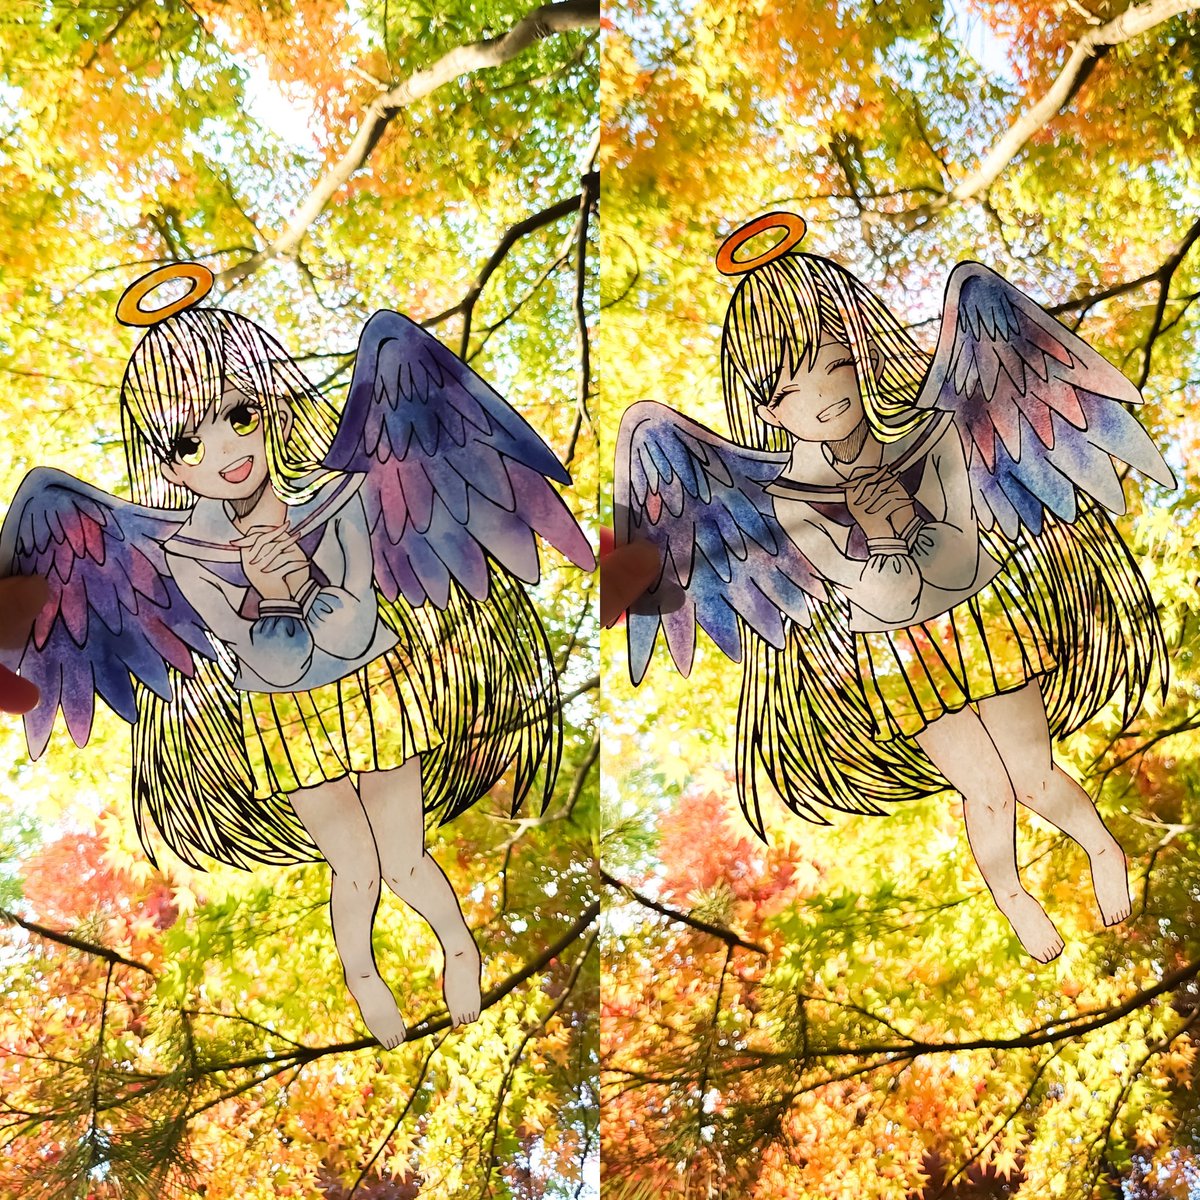 wings yellow skirt skirt long hair halo smile barefoot  illustration images